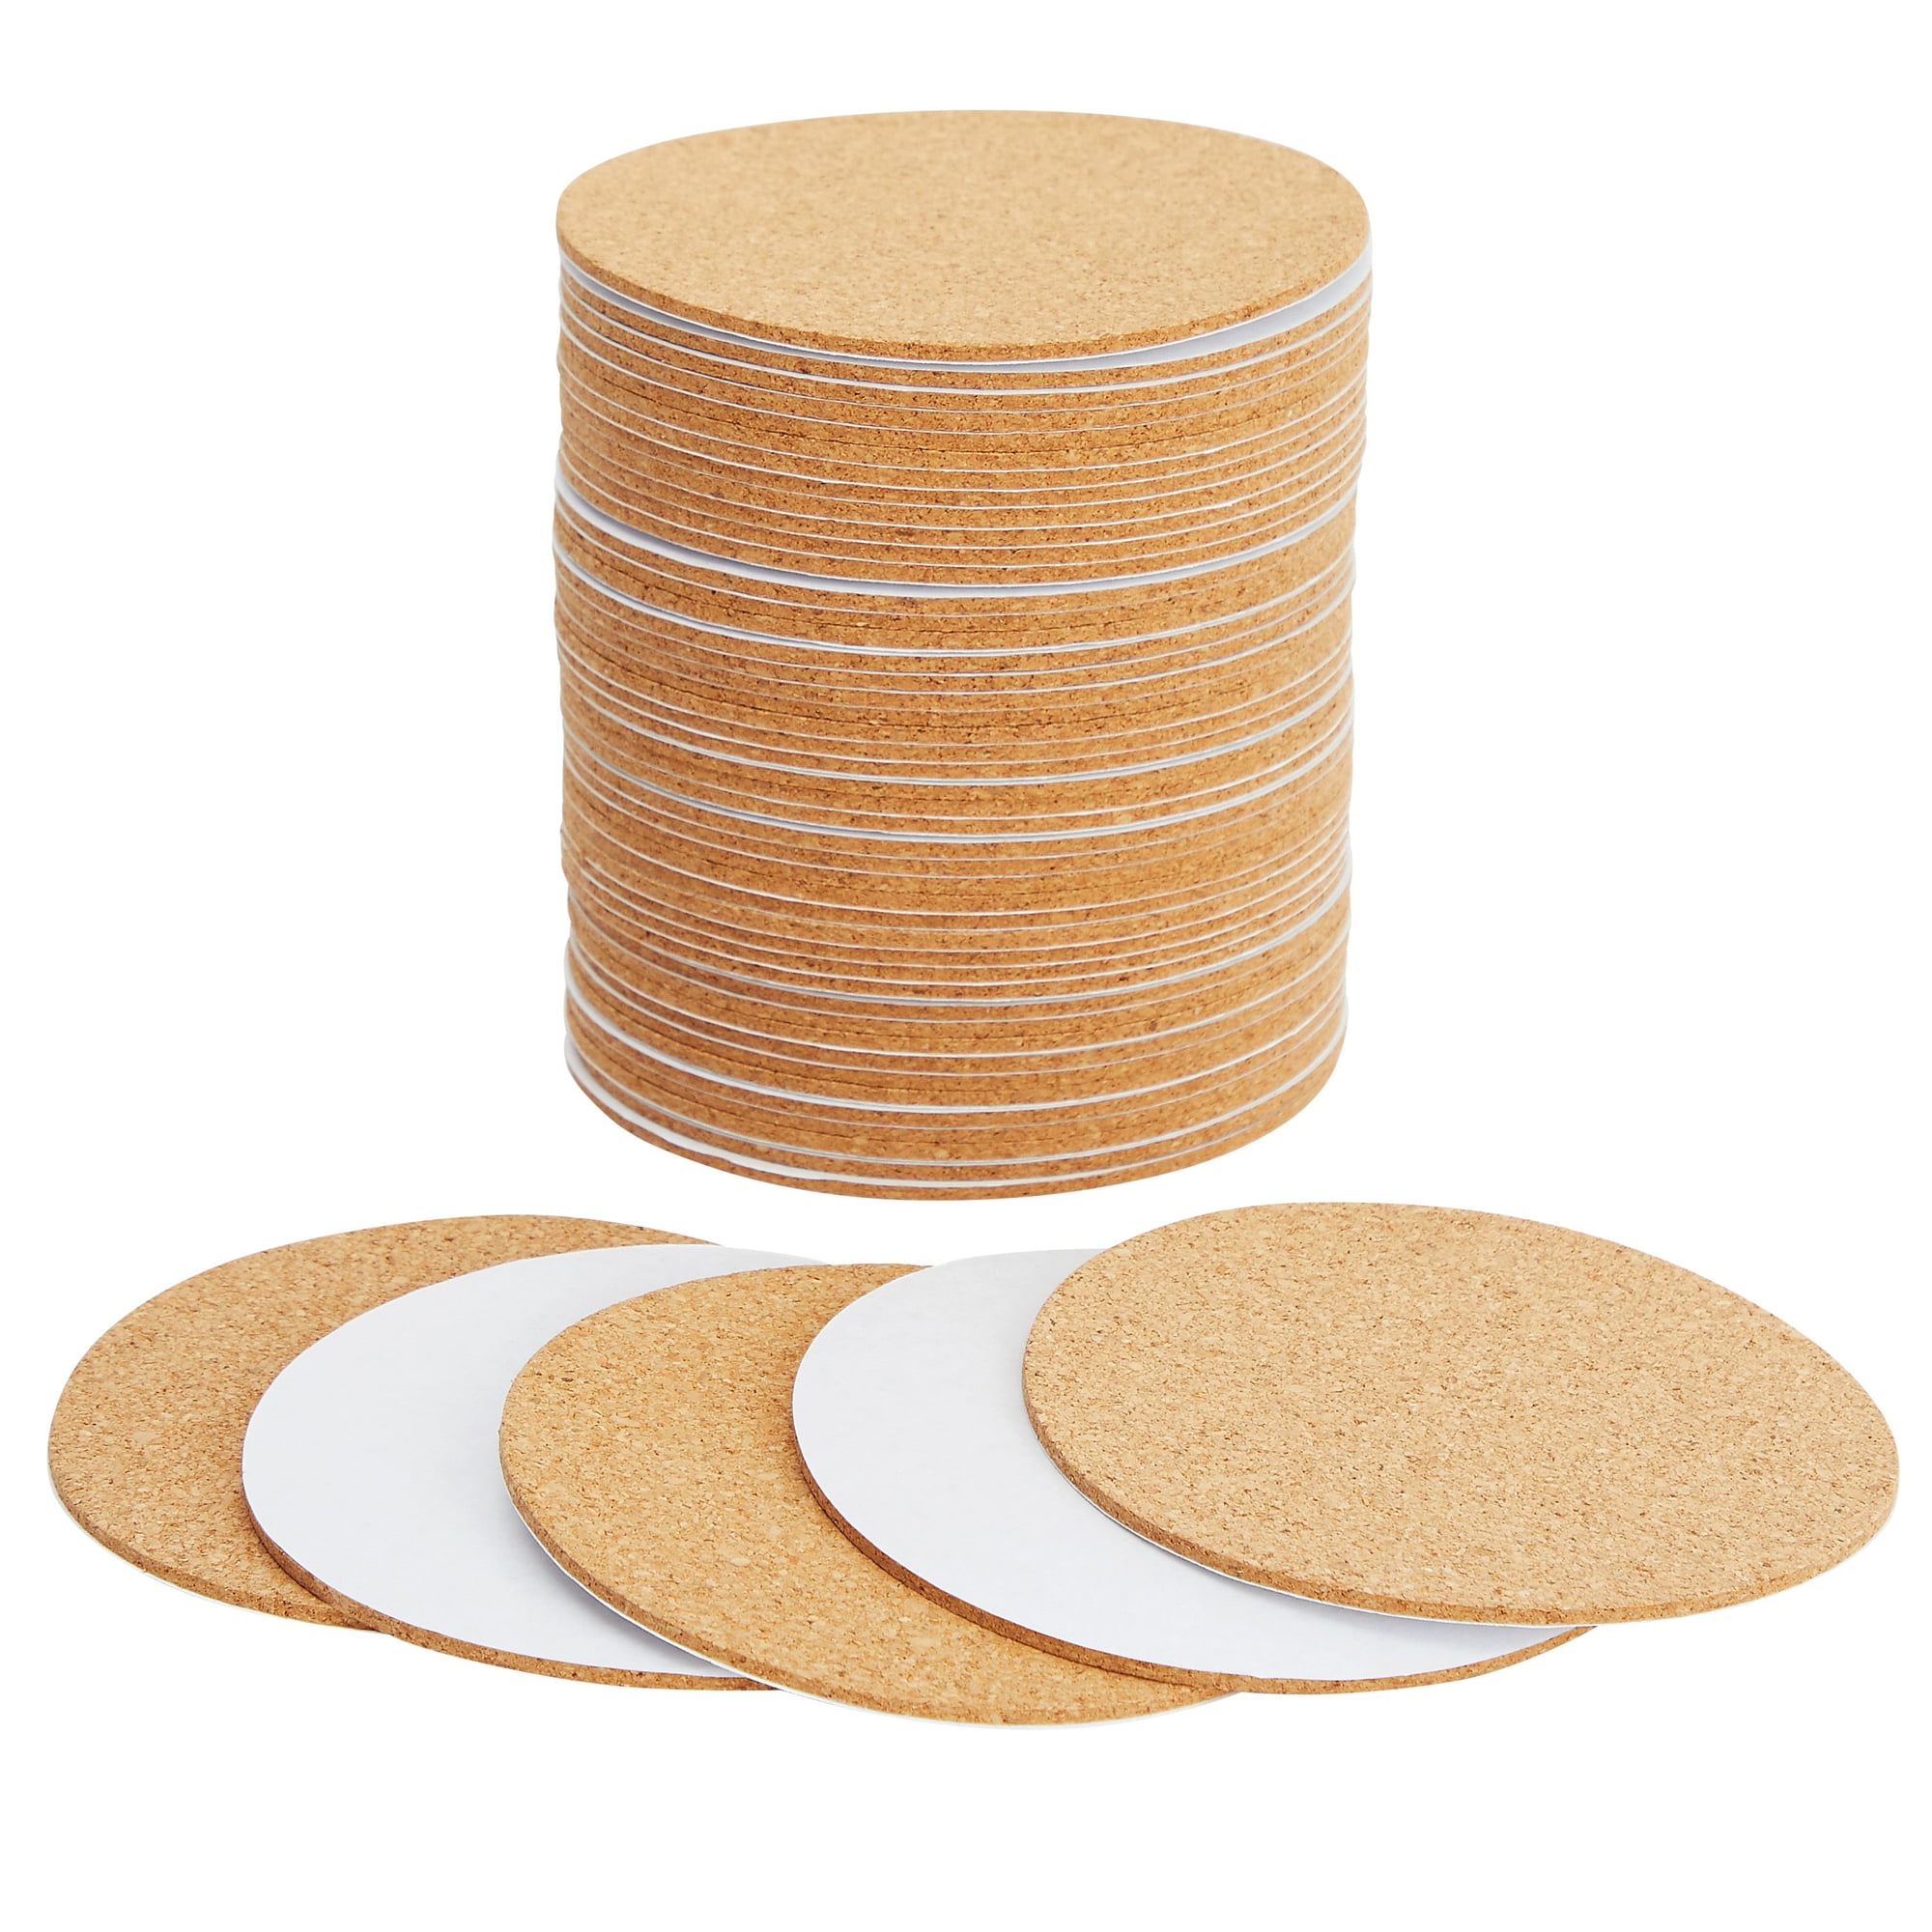 Self-Adhesive Cork Circle - 50-Pack Cork Backing Sheets for Coasters DIY Crafts